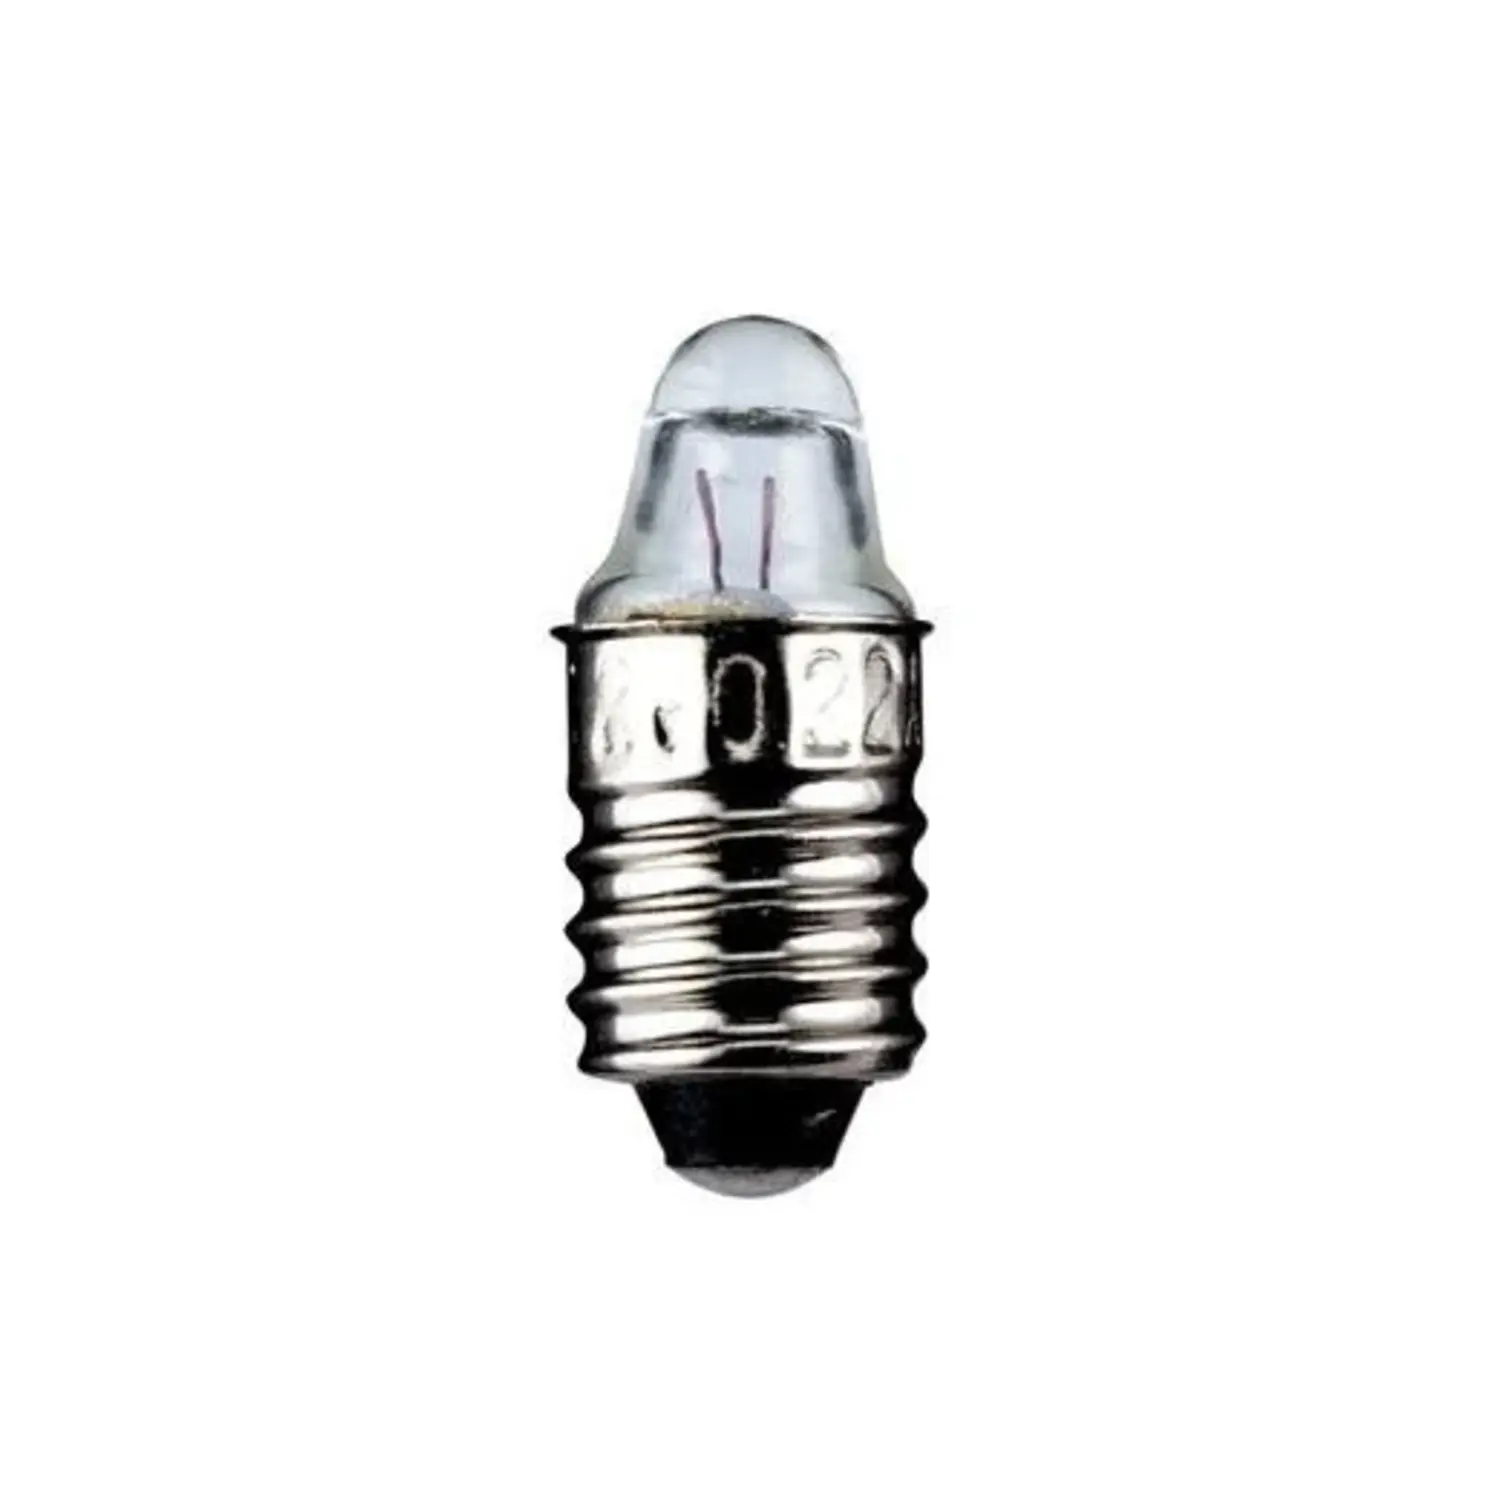 immagine del prodotto lampadina a faretto appuntita 1.10 watt trasparente E10 CE bianco caldo 3,7 volt wnt 9334